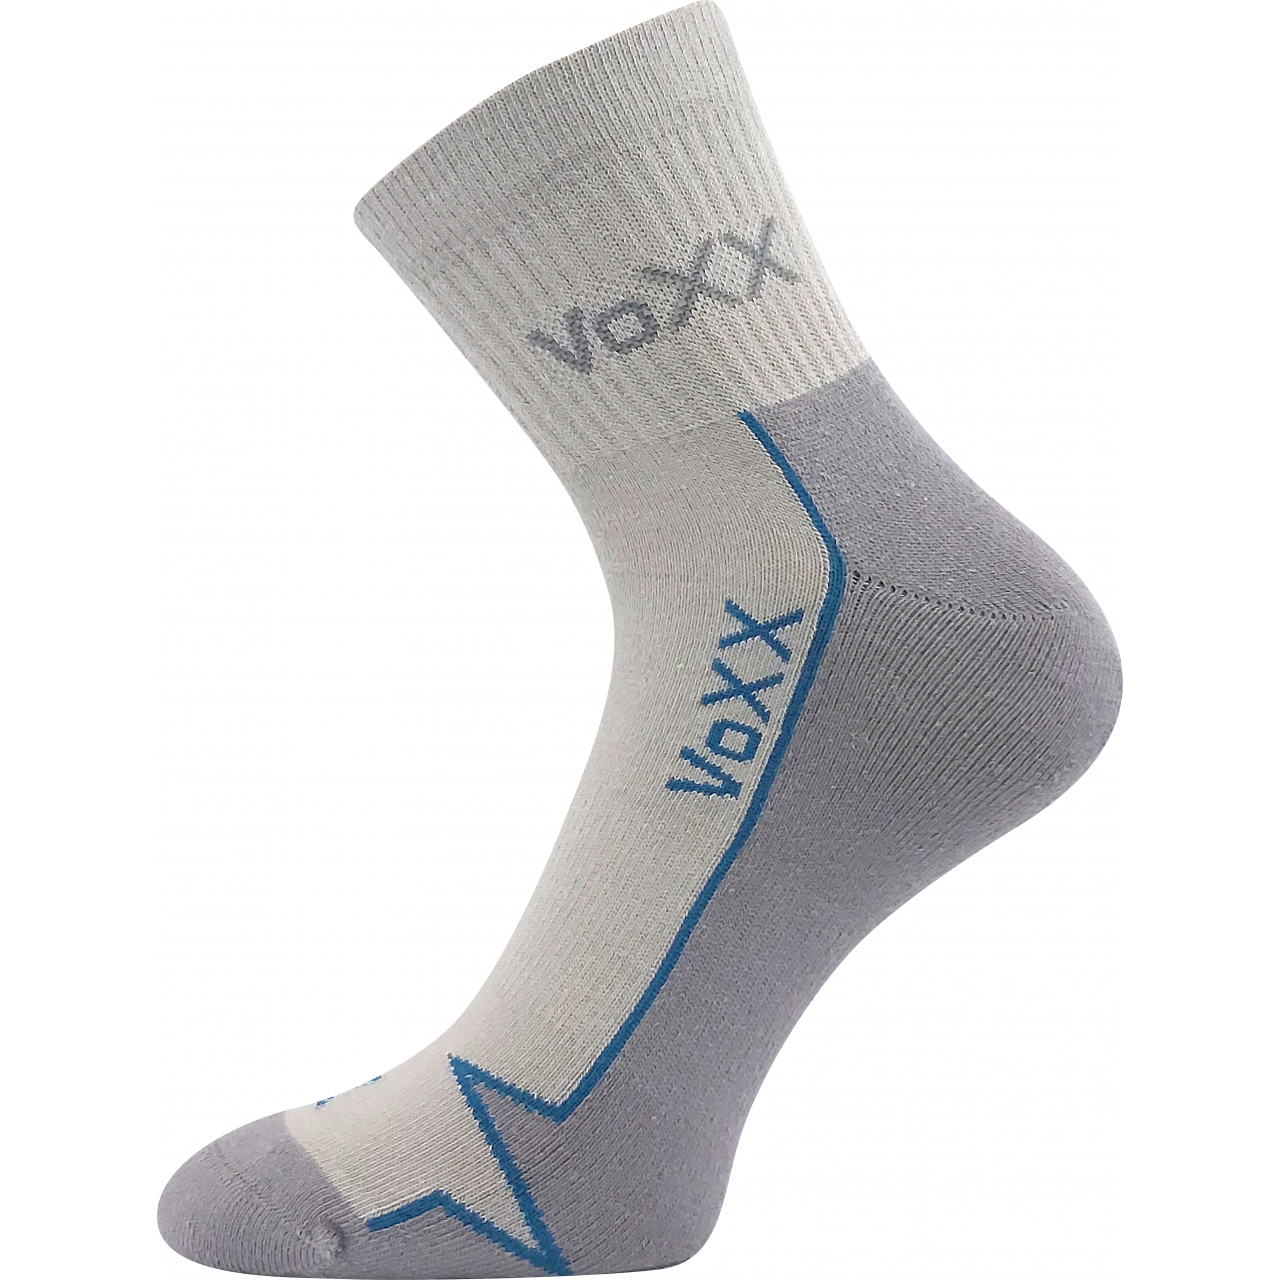 Ponožky sportovní Voxx Locator B - světle šedé, 39-42